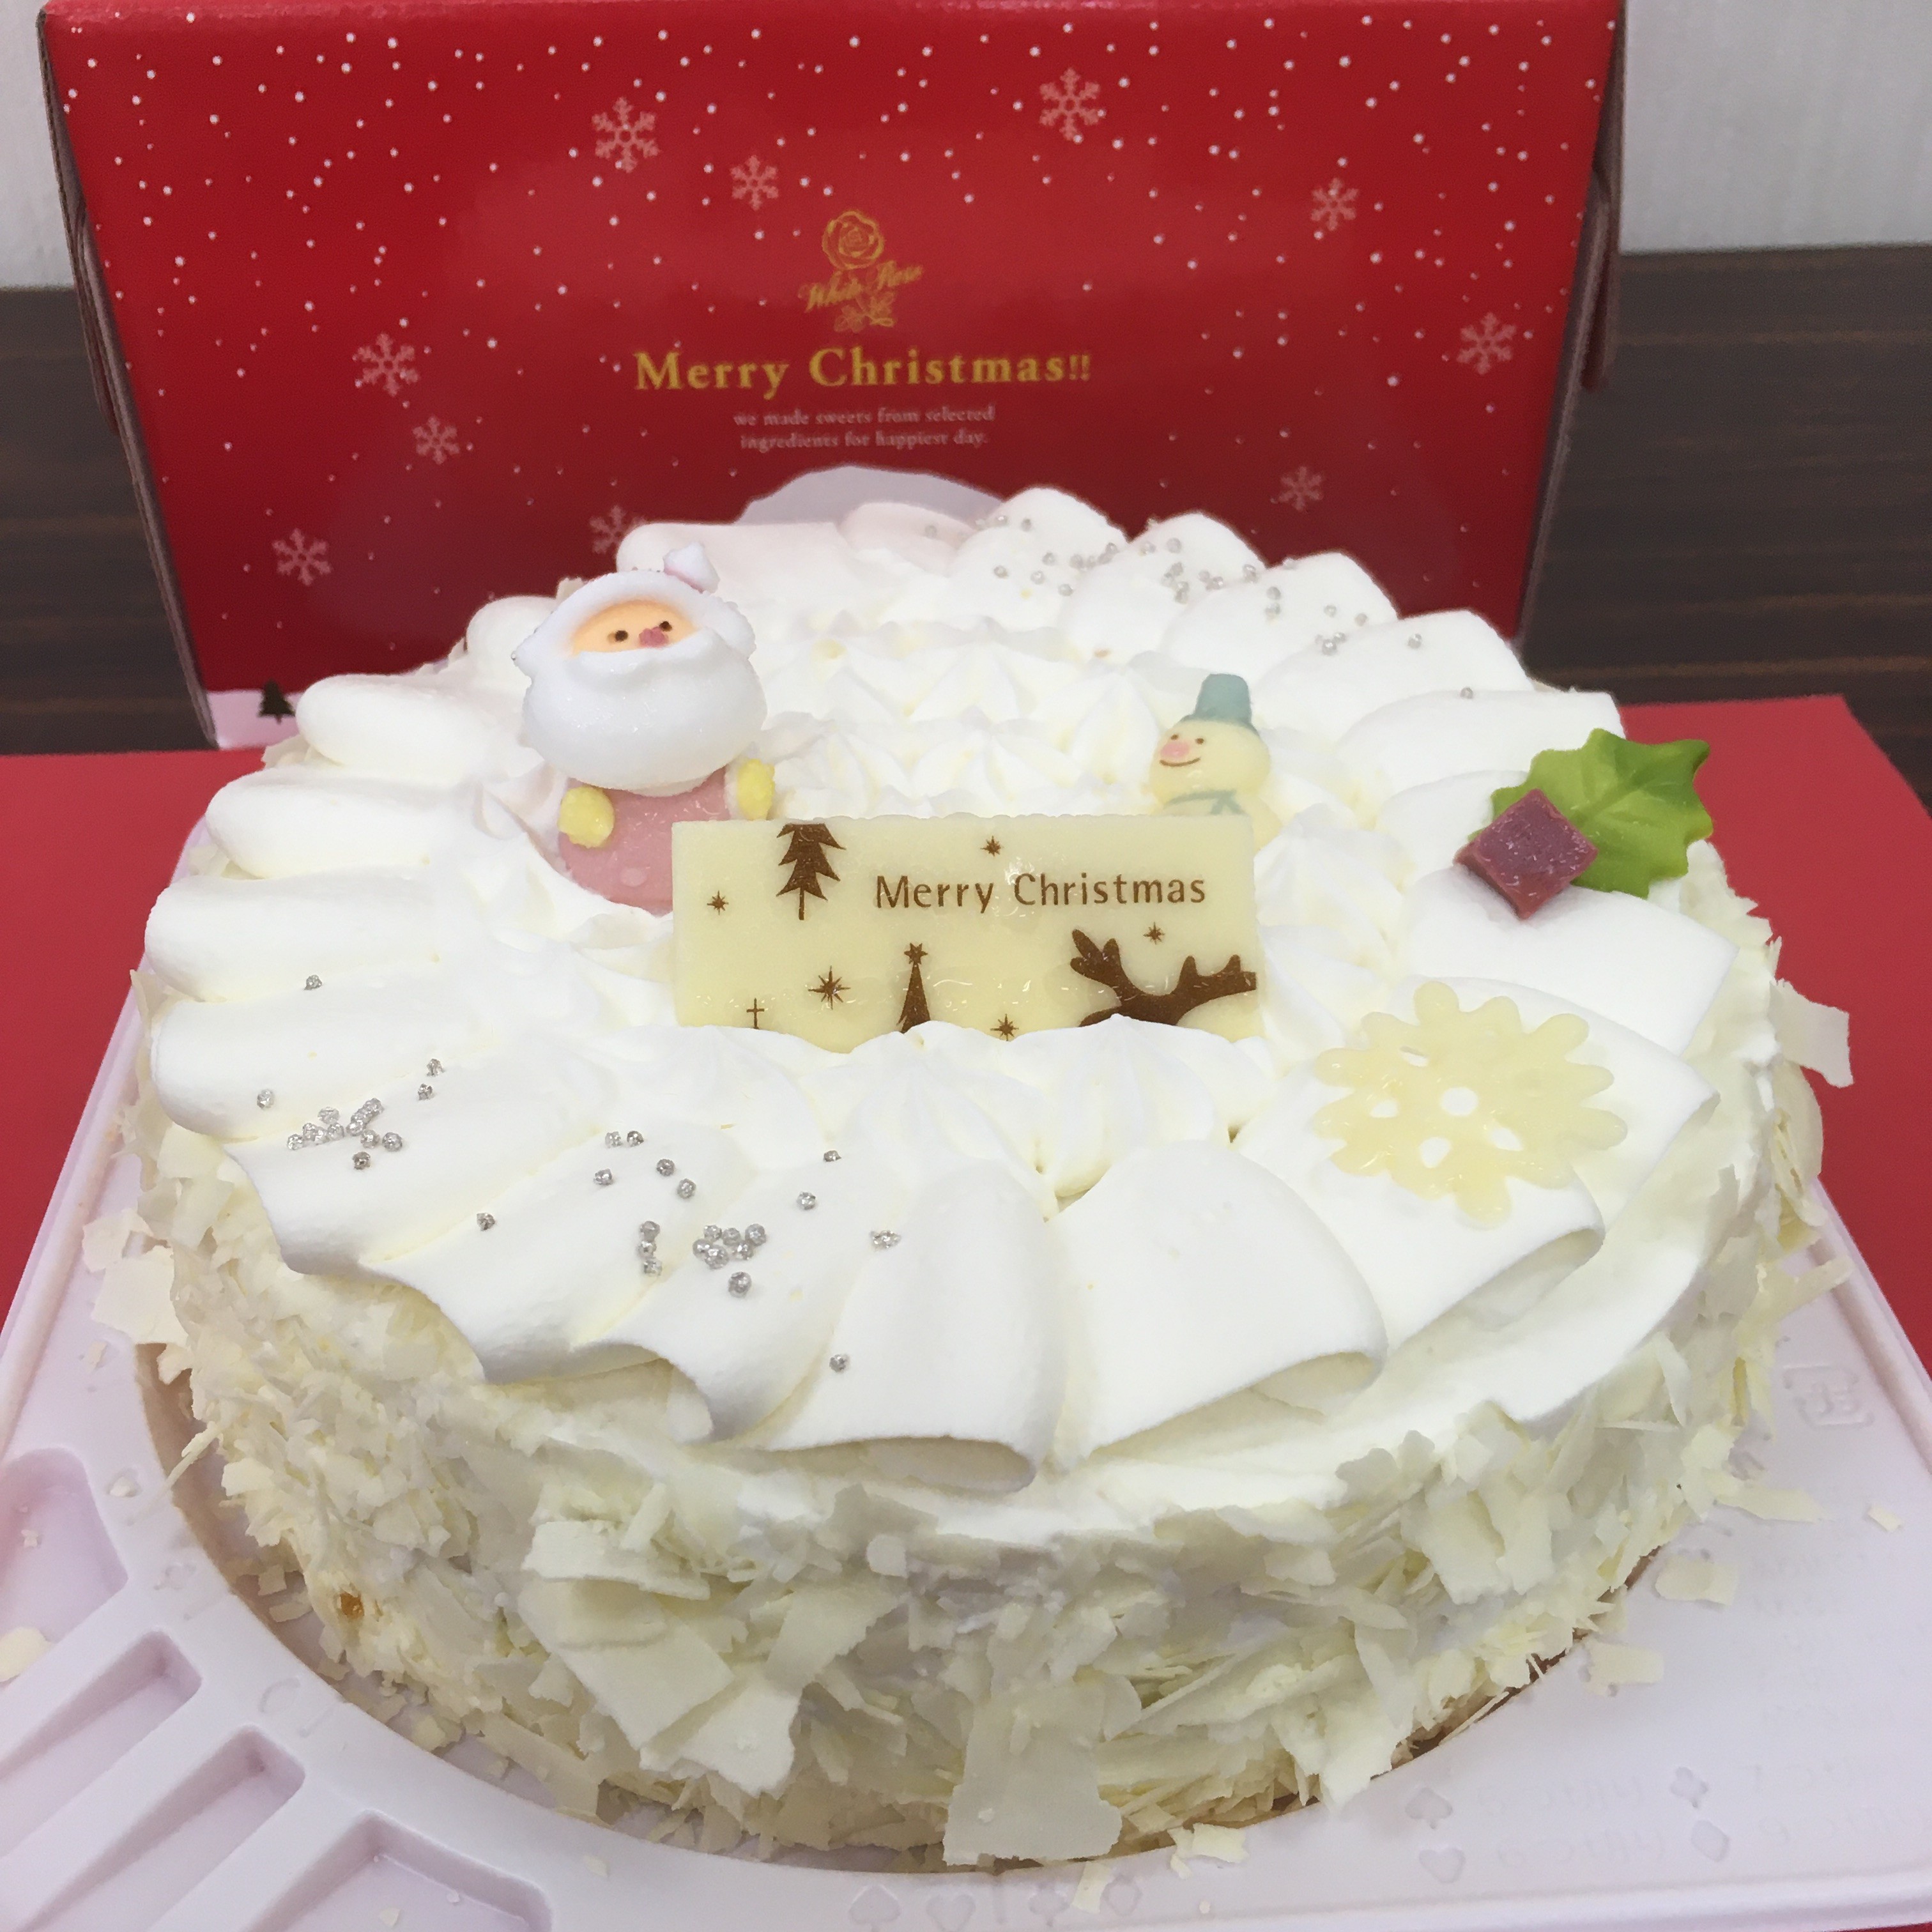 コープしが 年オリジナルクリスマスケーキはクリームたっぷり 宅配でも店舗でも購入できます 滋賀のママがイベント 育児 遊び 学びを発信 シガマンマ ピースマム